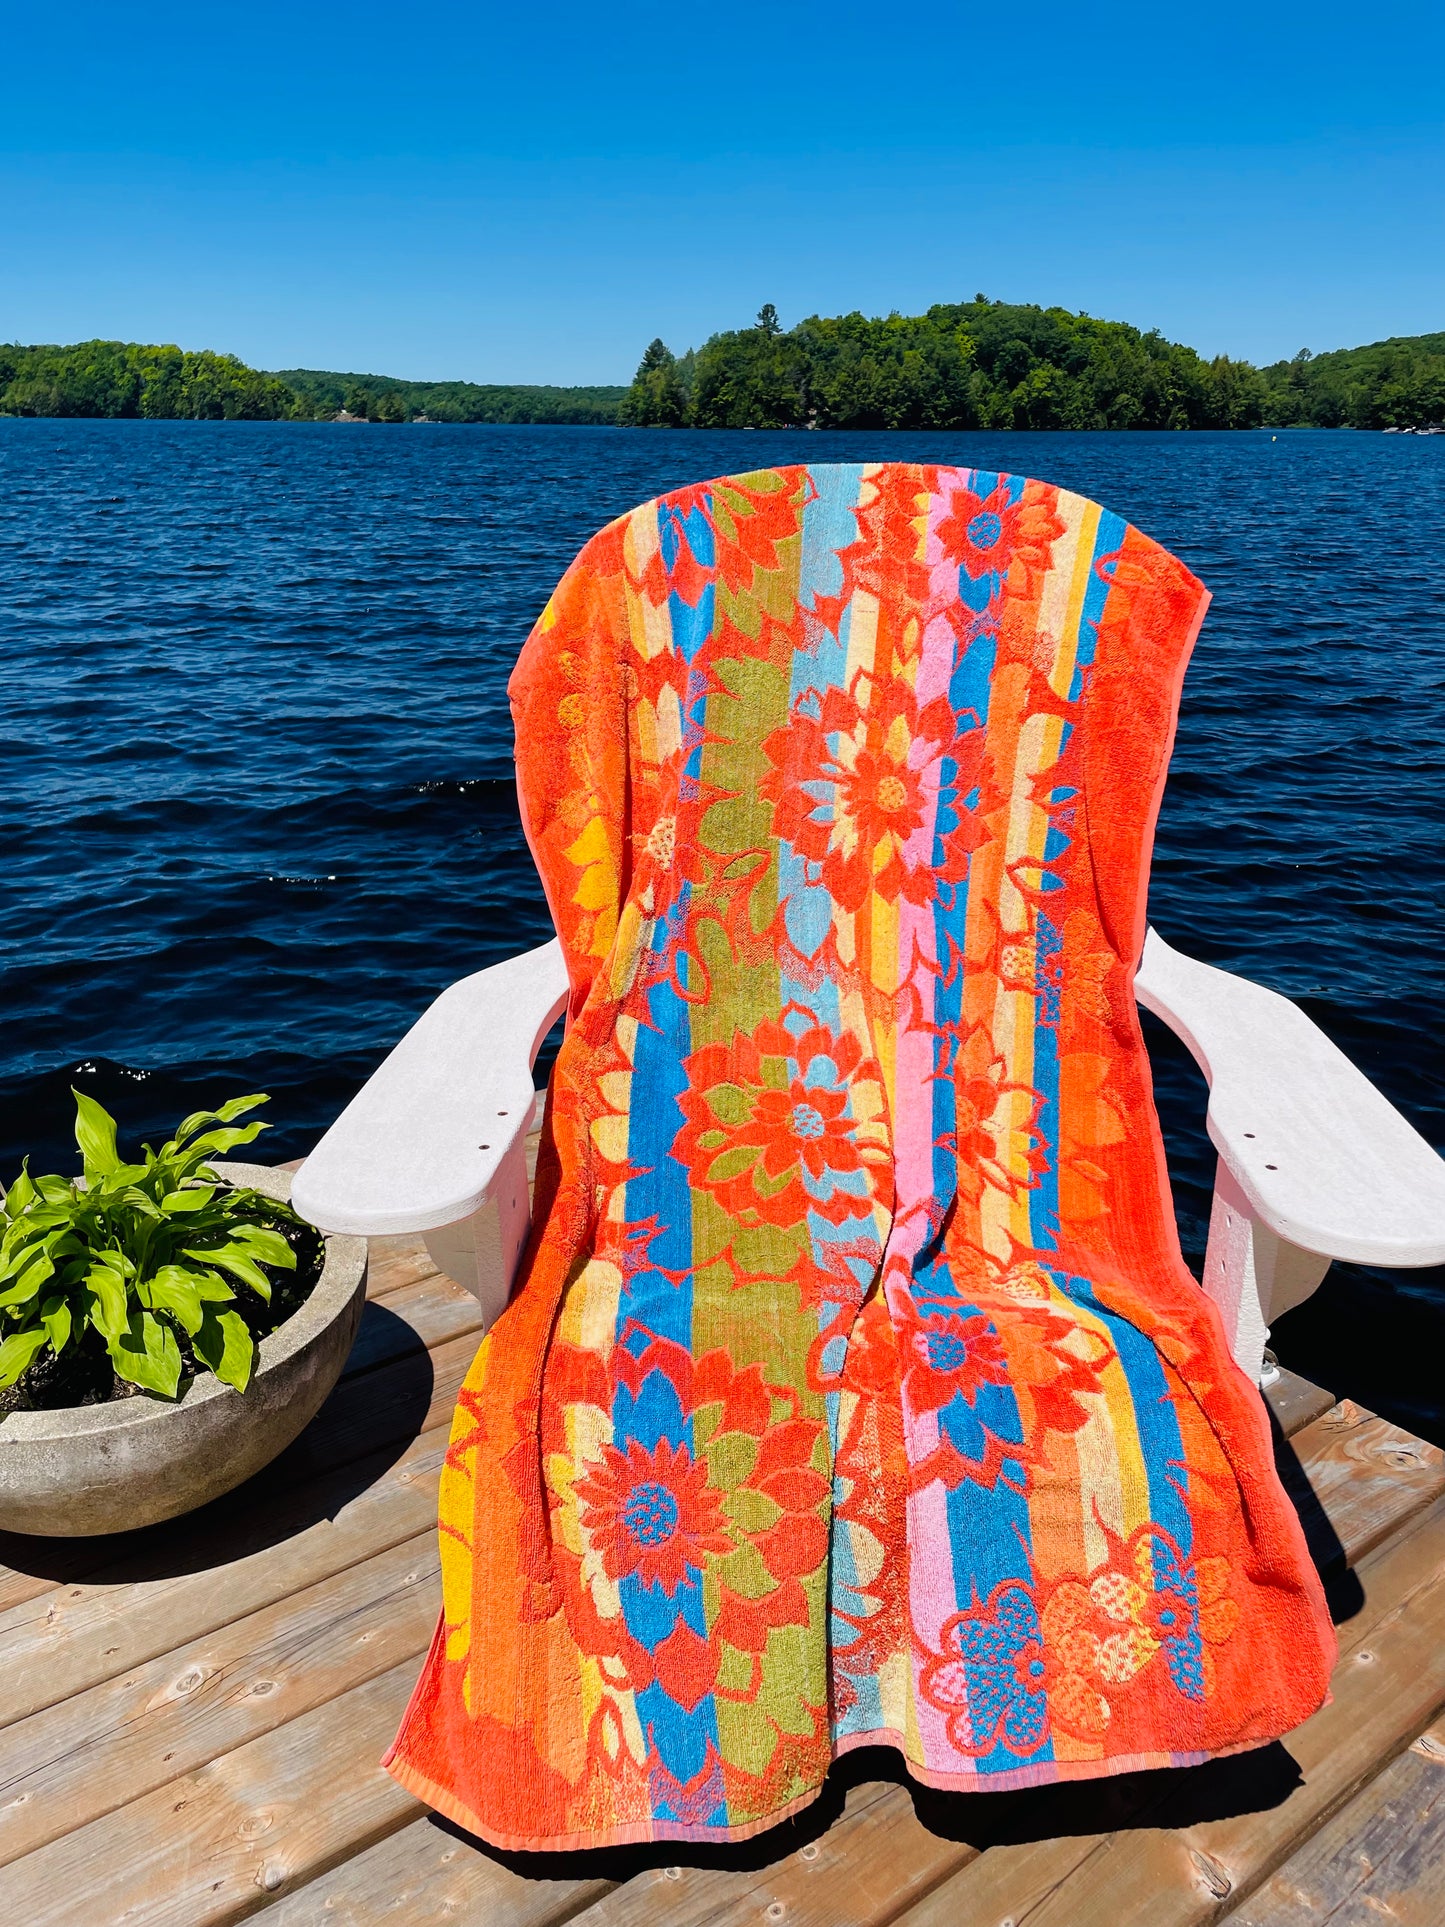 Sun Fun 100% Cotton Beach Towel in Bright Tropical Flower Print - Made in British Hong Kong